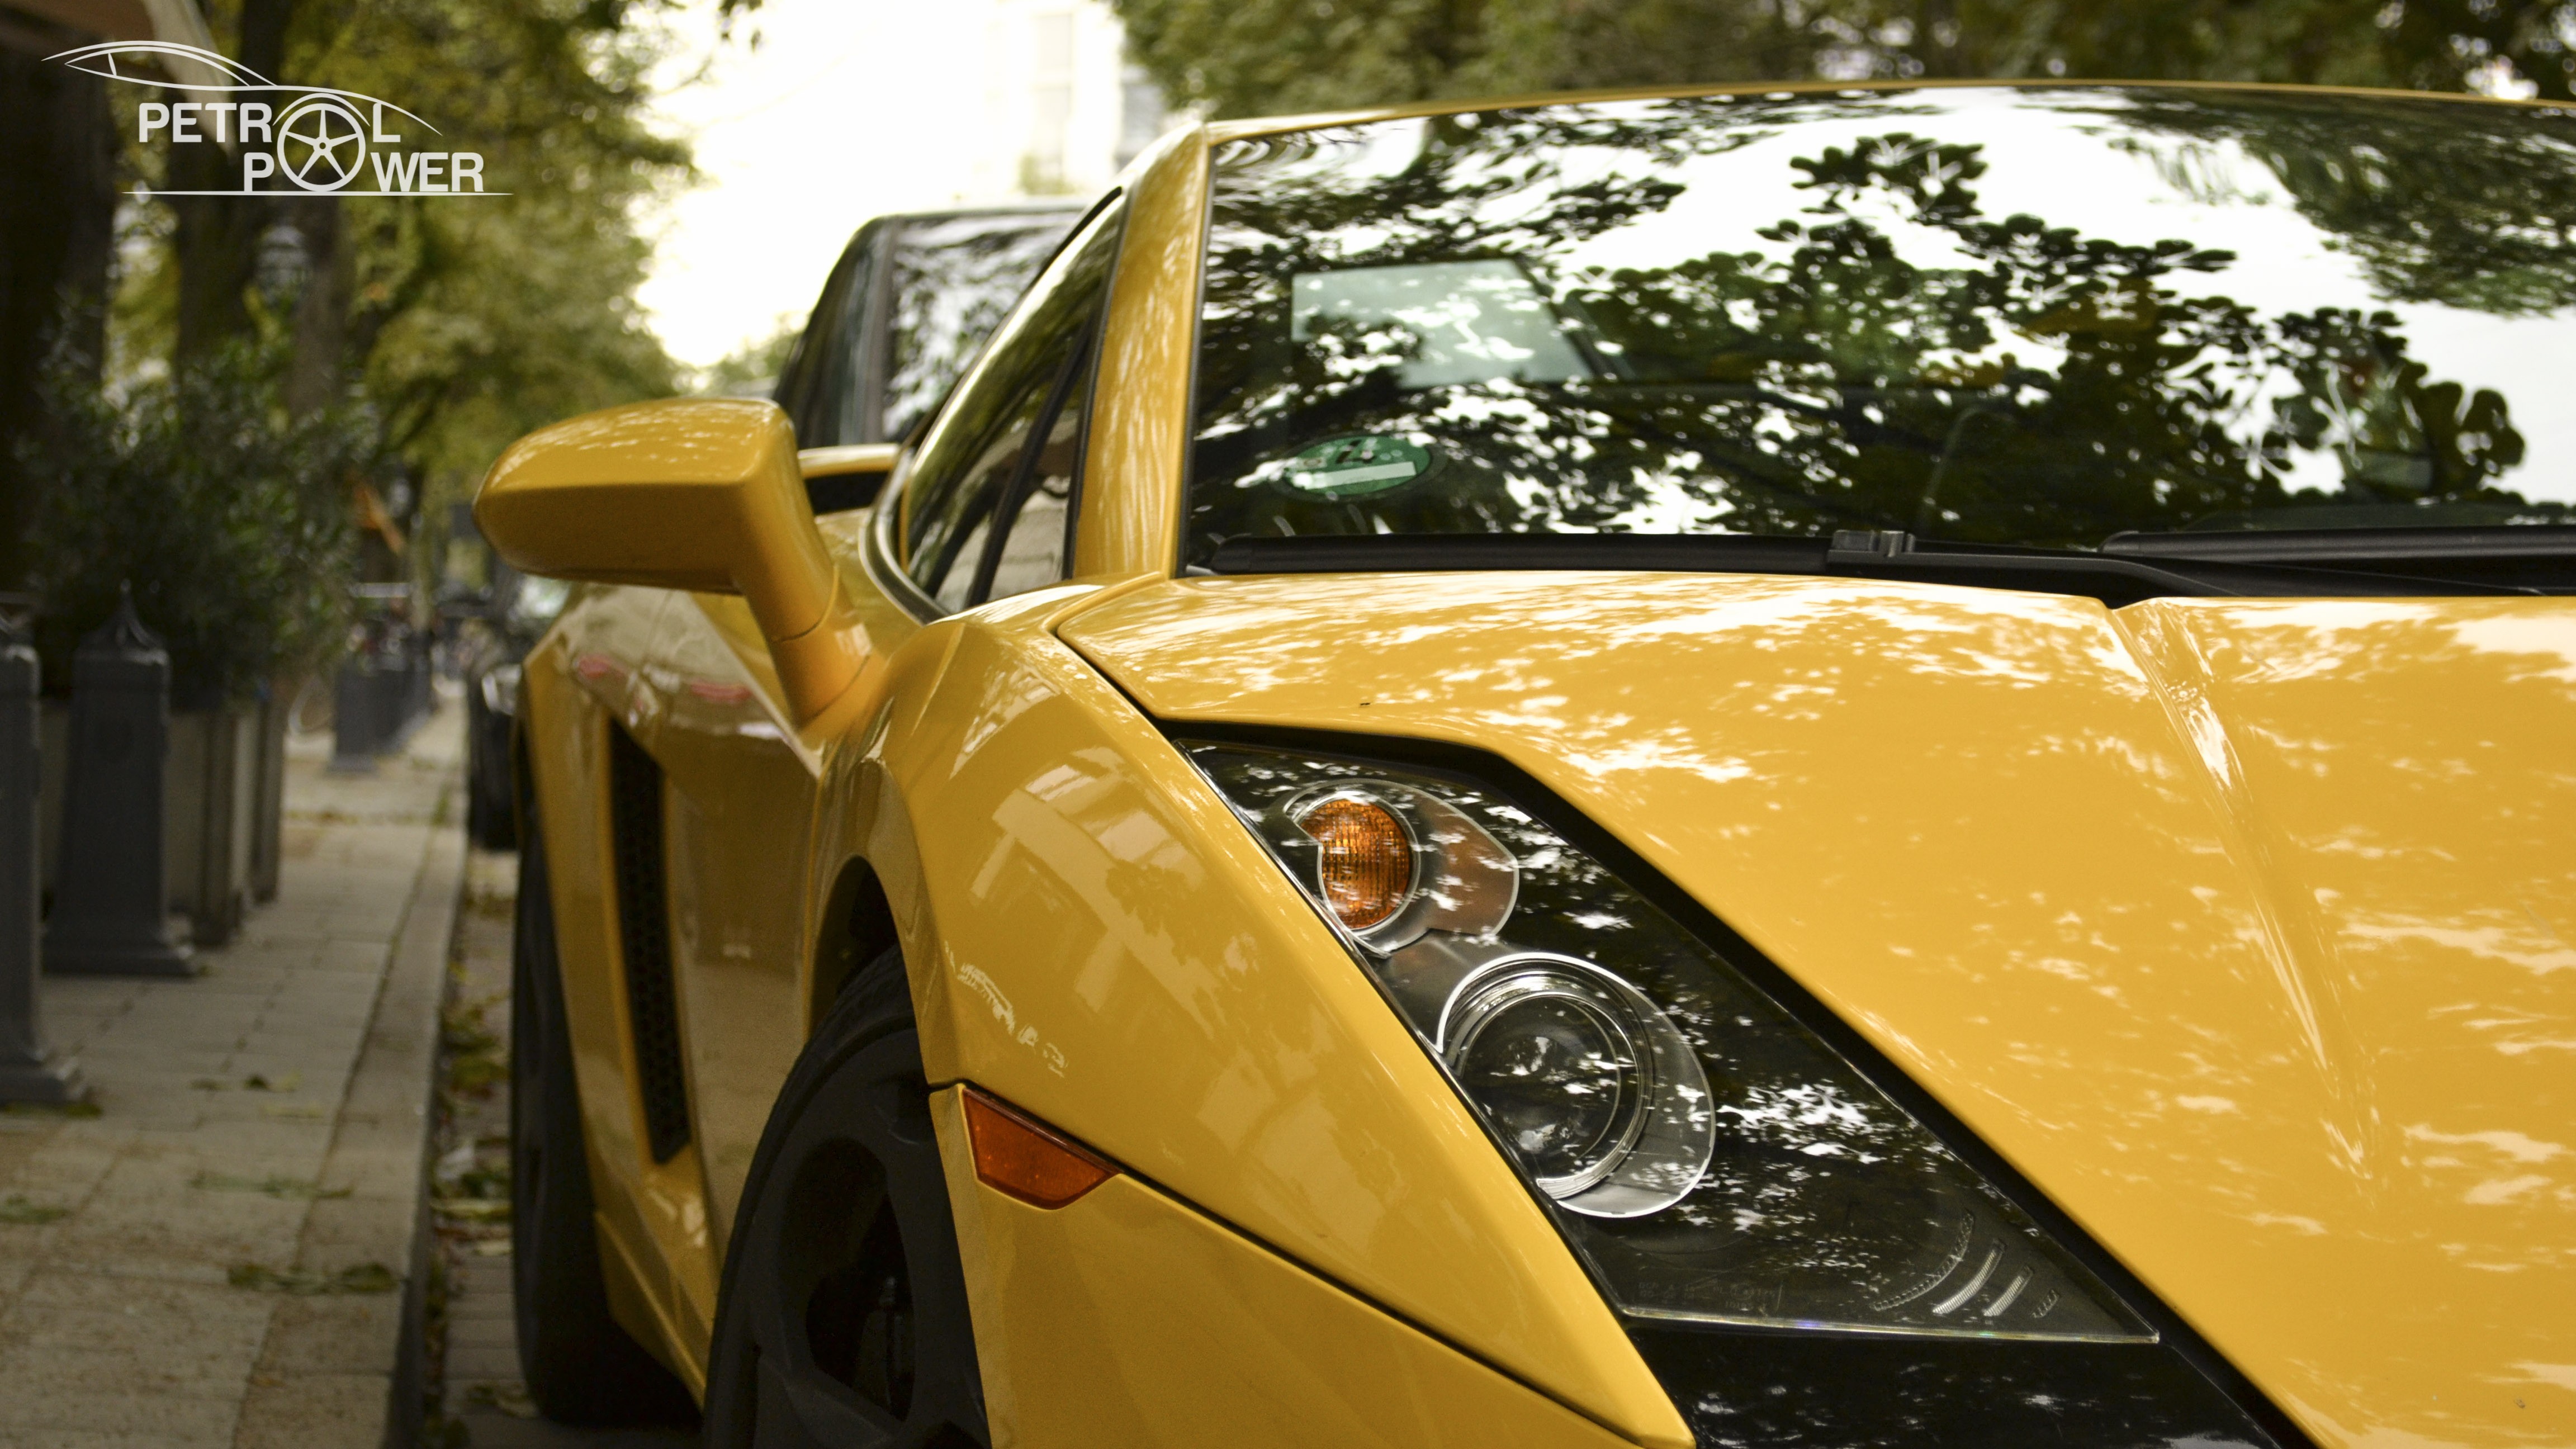 General 4608x2592 car Lamborghini vehicle yellow cars closeup italian cars Lamborghini Gallardo Volkswagen Group